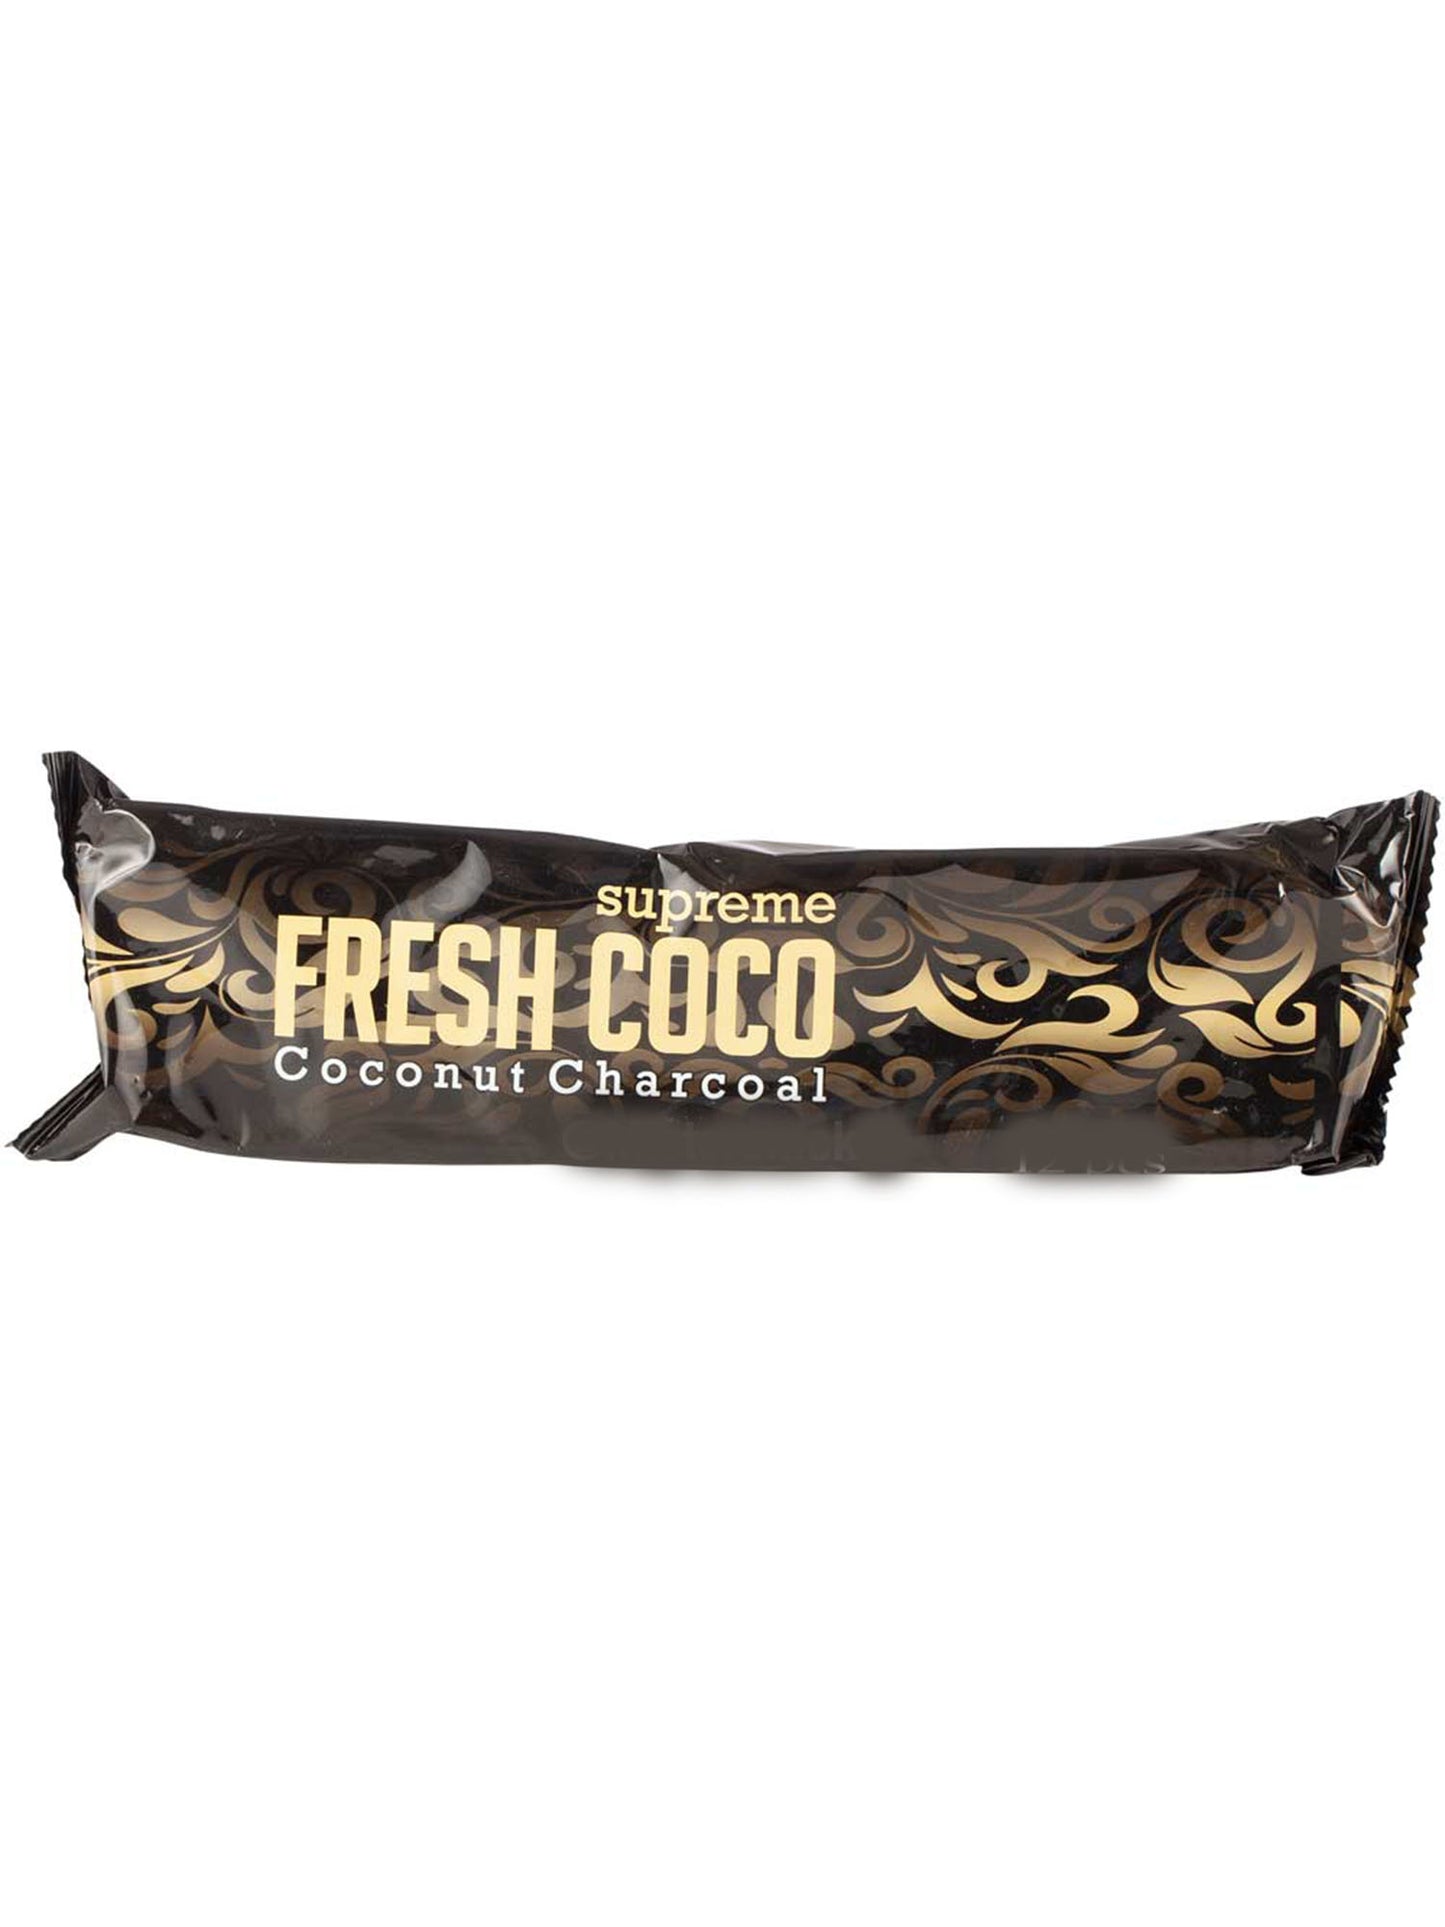 Charbon Fresh Coco - Chicha Charcoal